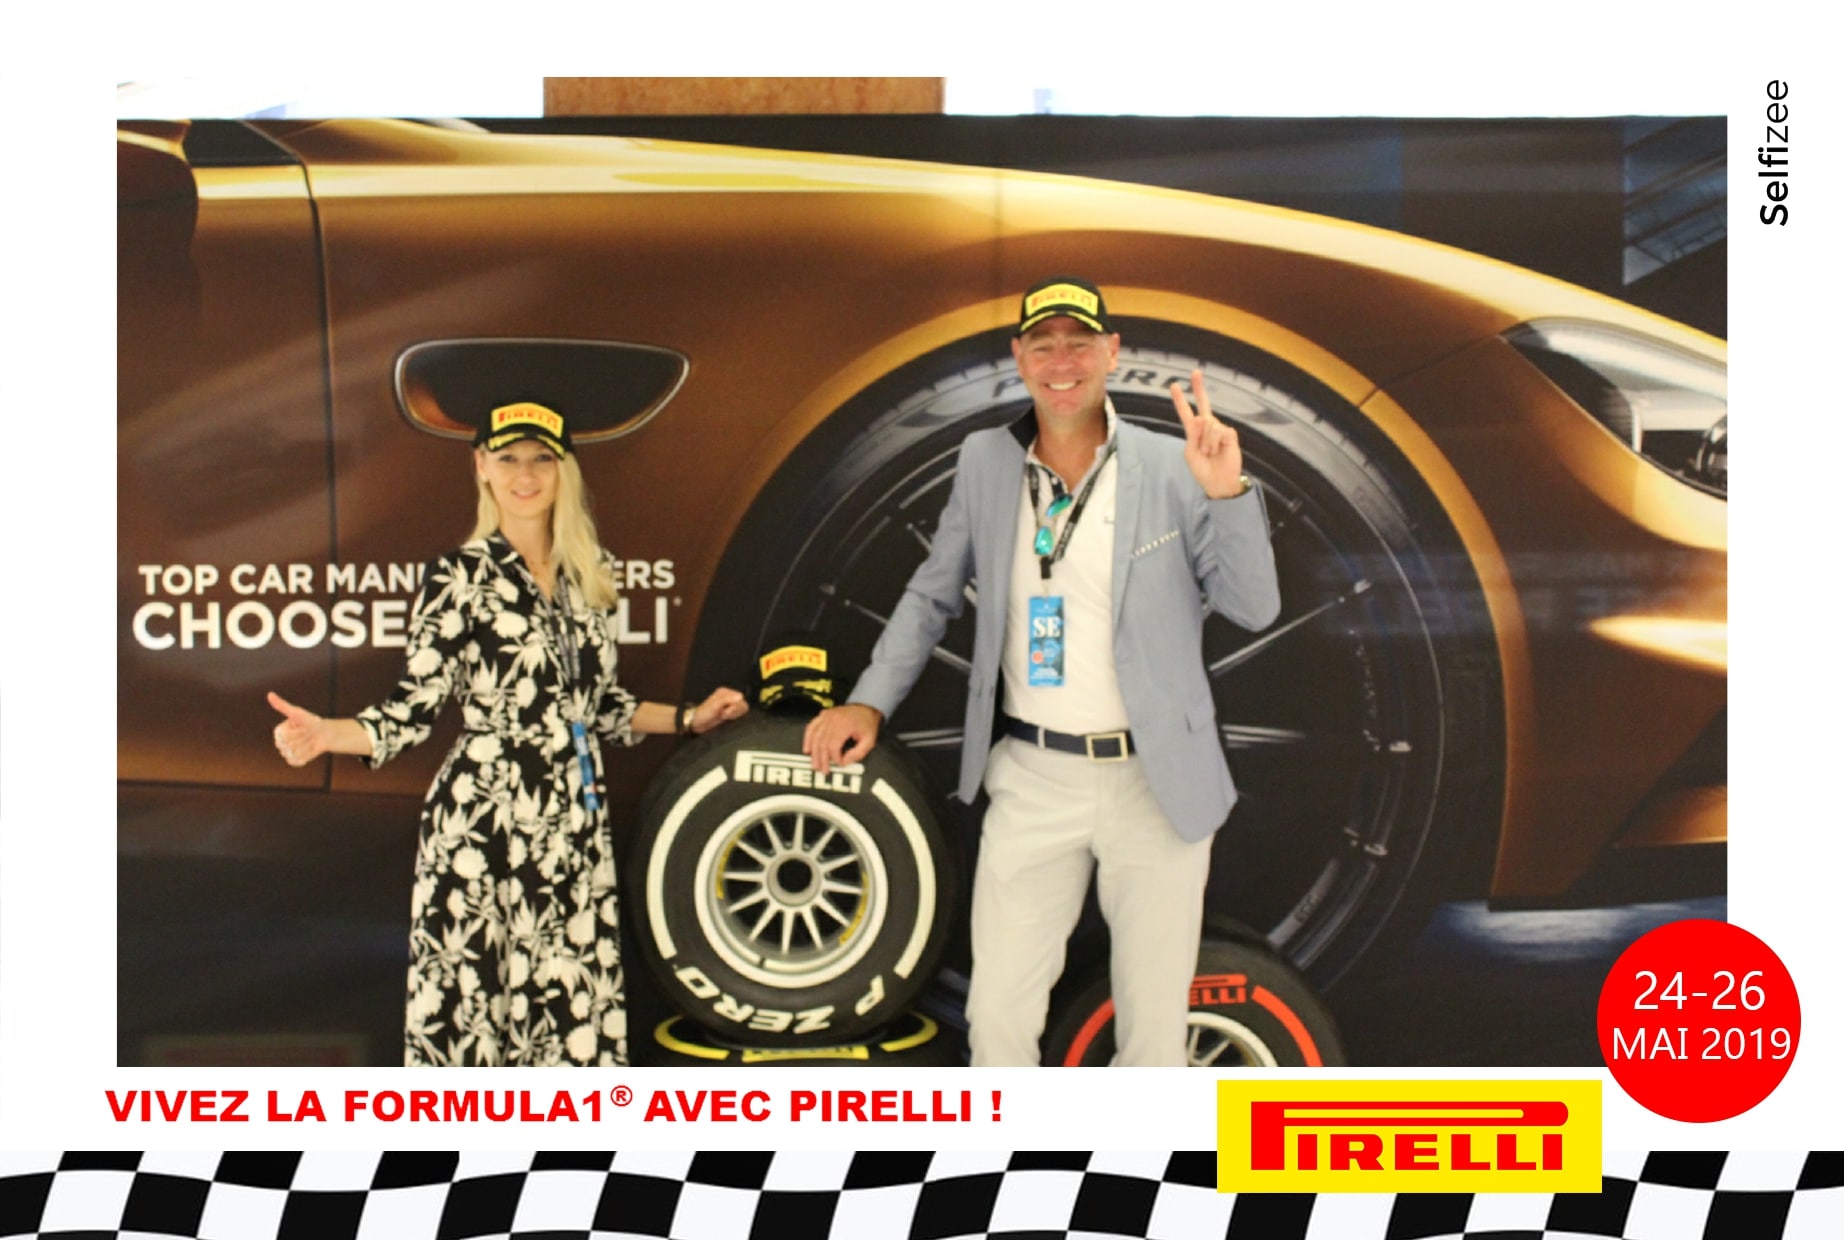 Selfie personnalisé et animation photobooth au Centre Commercial de Fontvieille Monaco - événement Pirelli pour le Grand Prix de Monaco F1